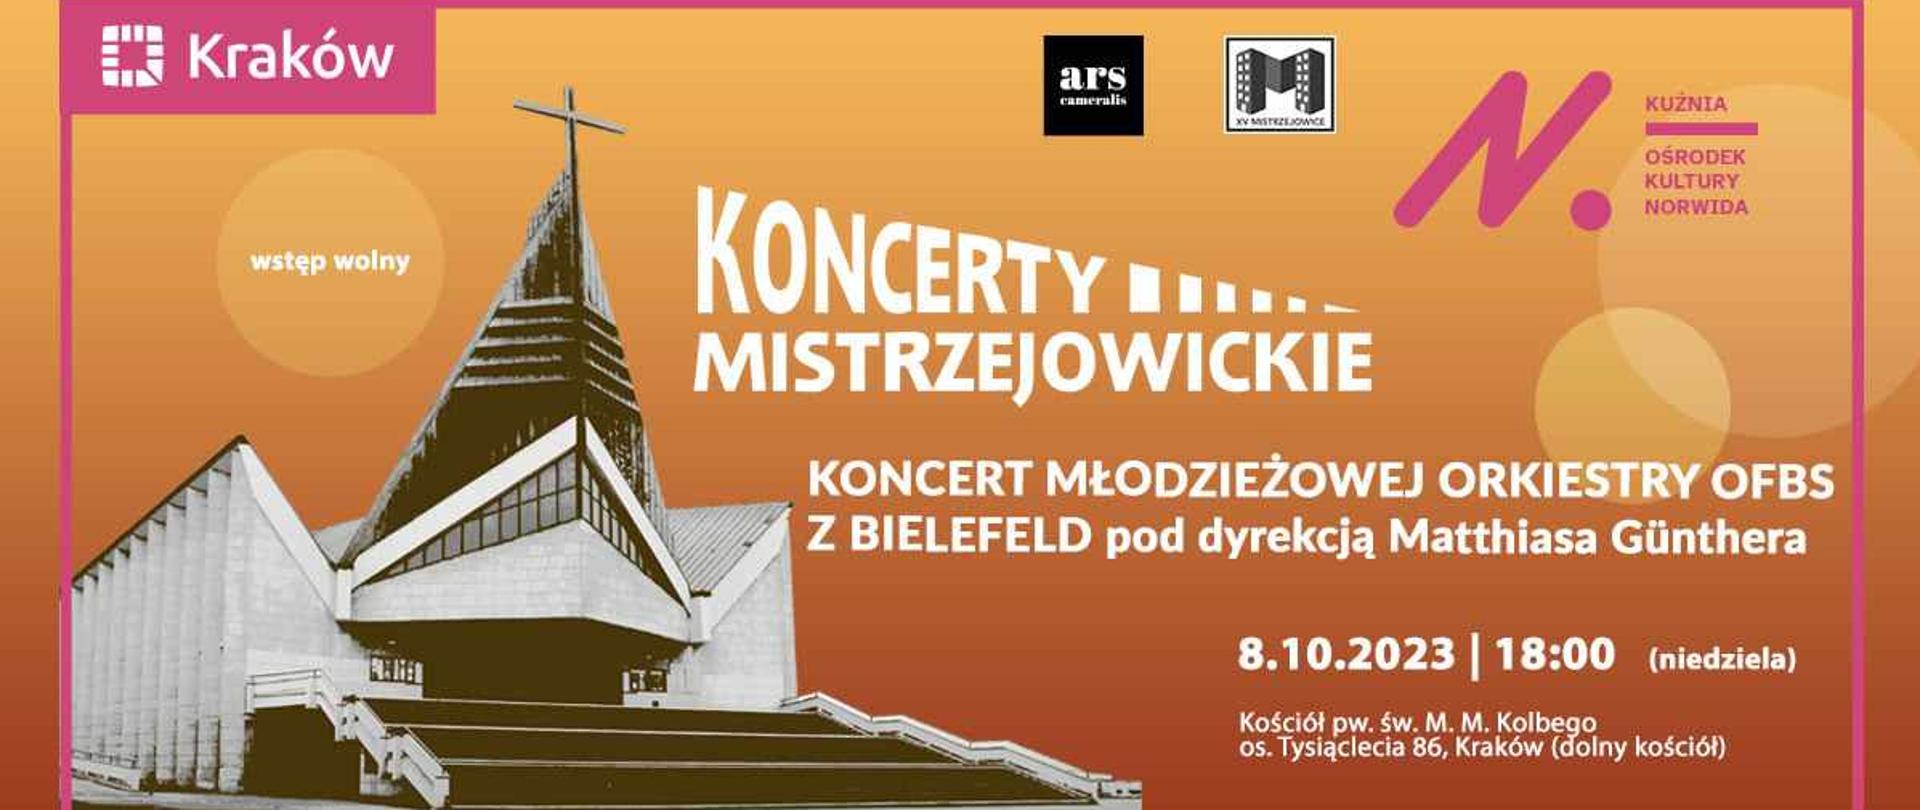 Zapowiedź koncertu OFBS w Mistrzejowicach.